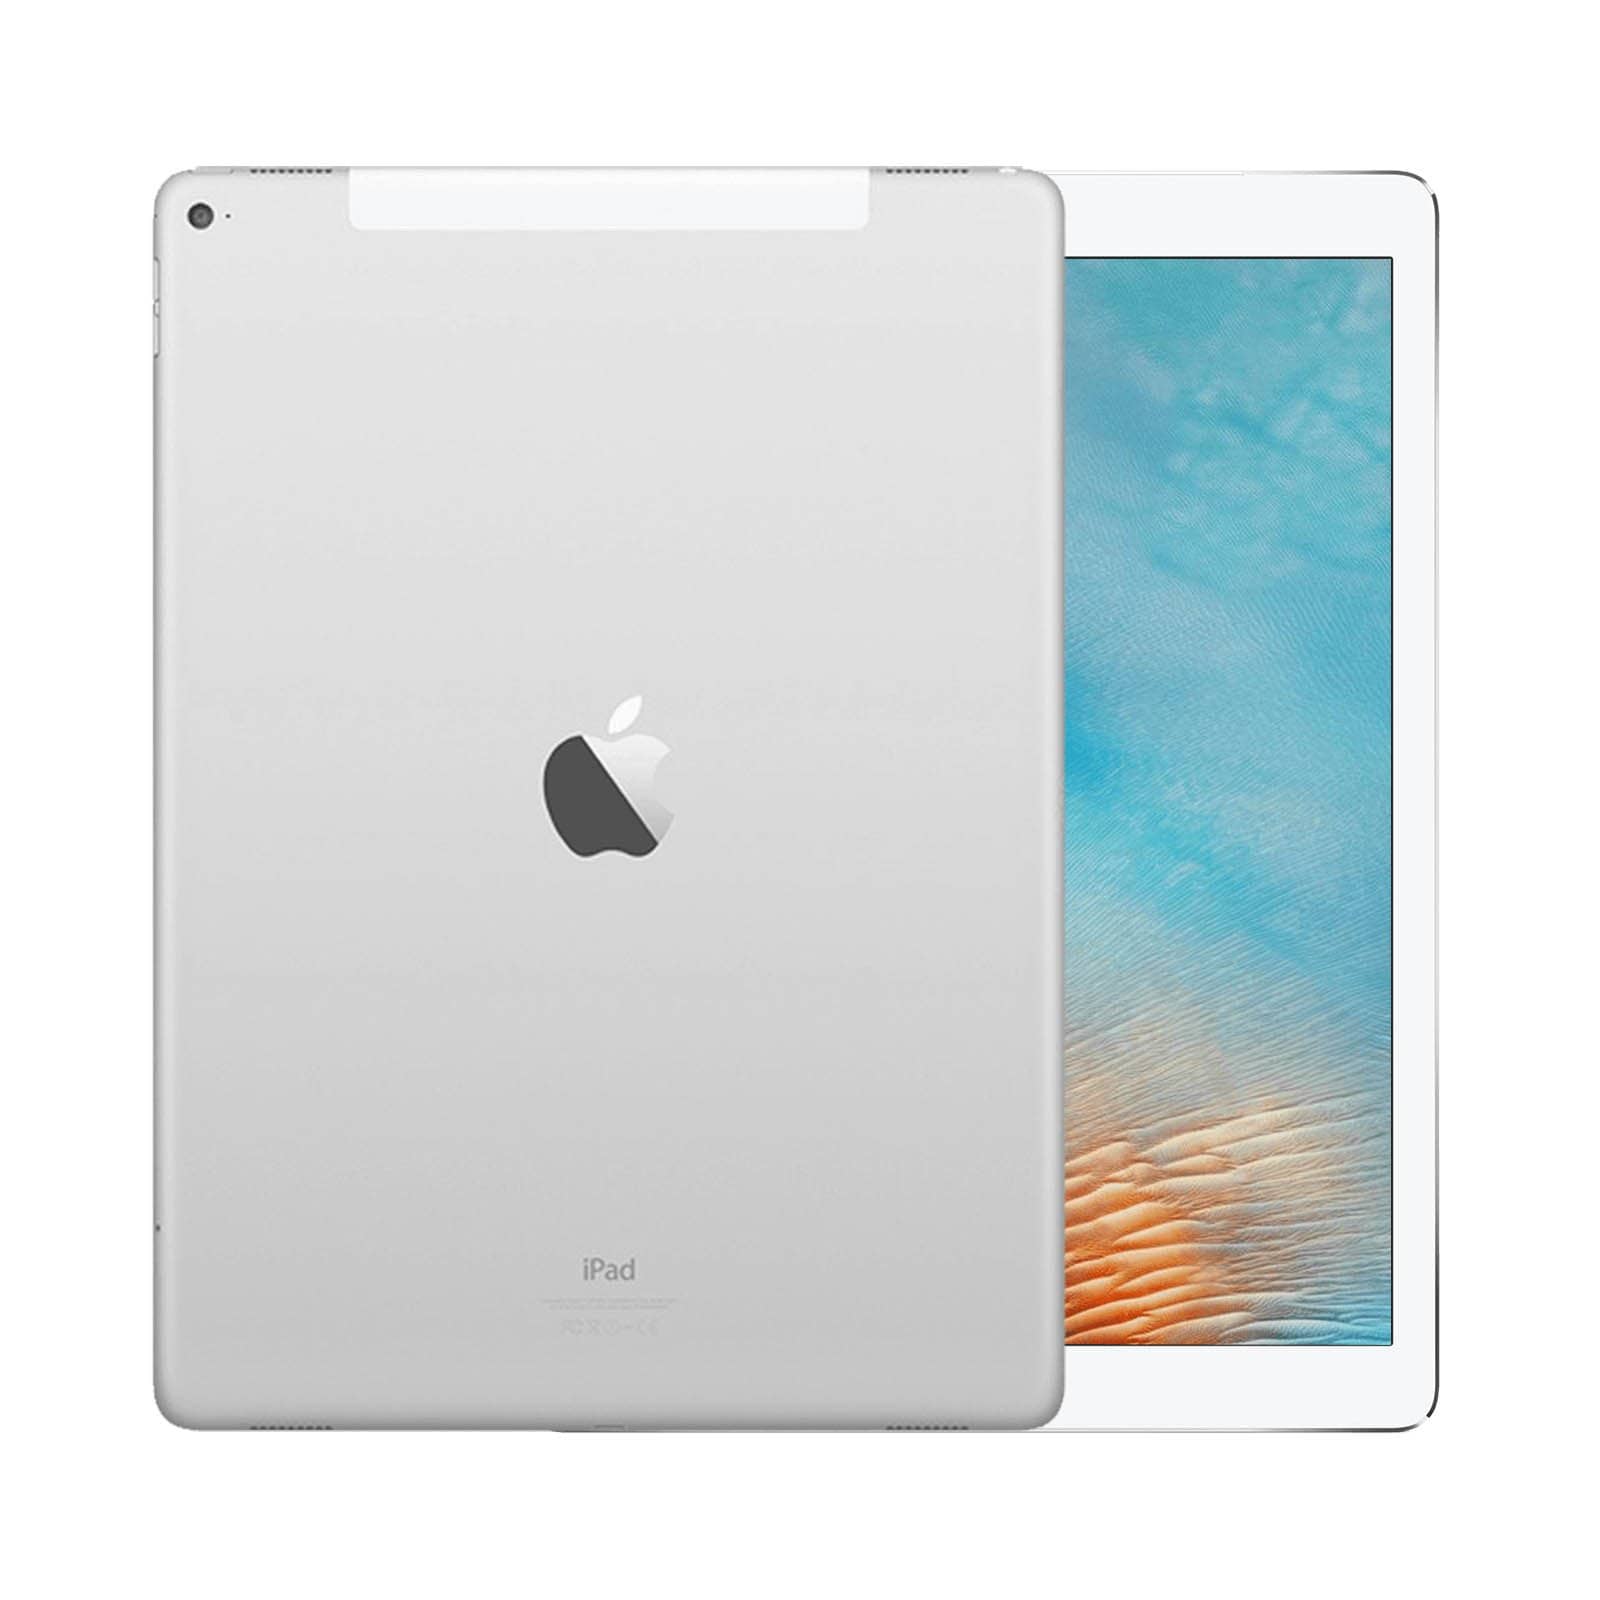 iPad Pro 12.9 Inch 3rd Gen 512GB Silver Good - WiFi 512GB Silver Good